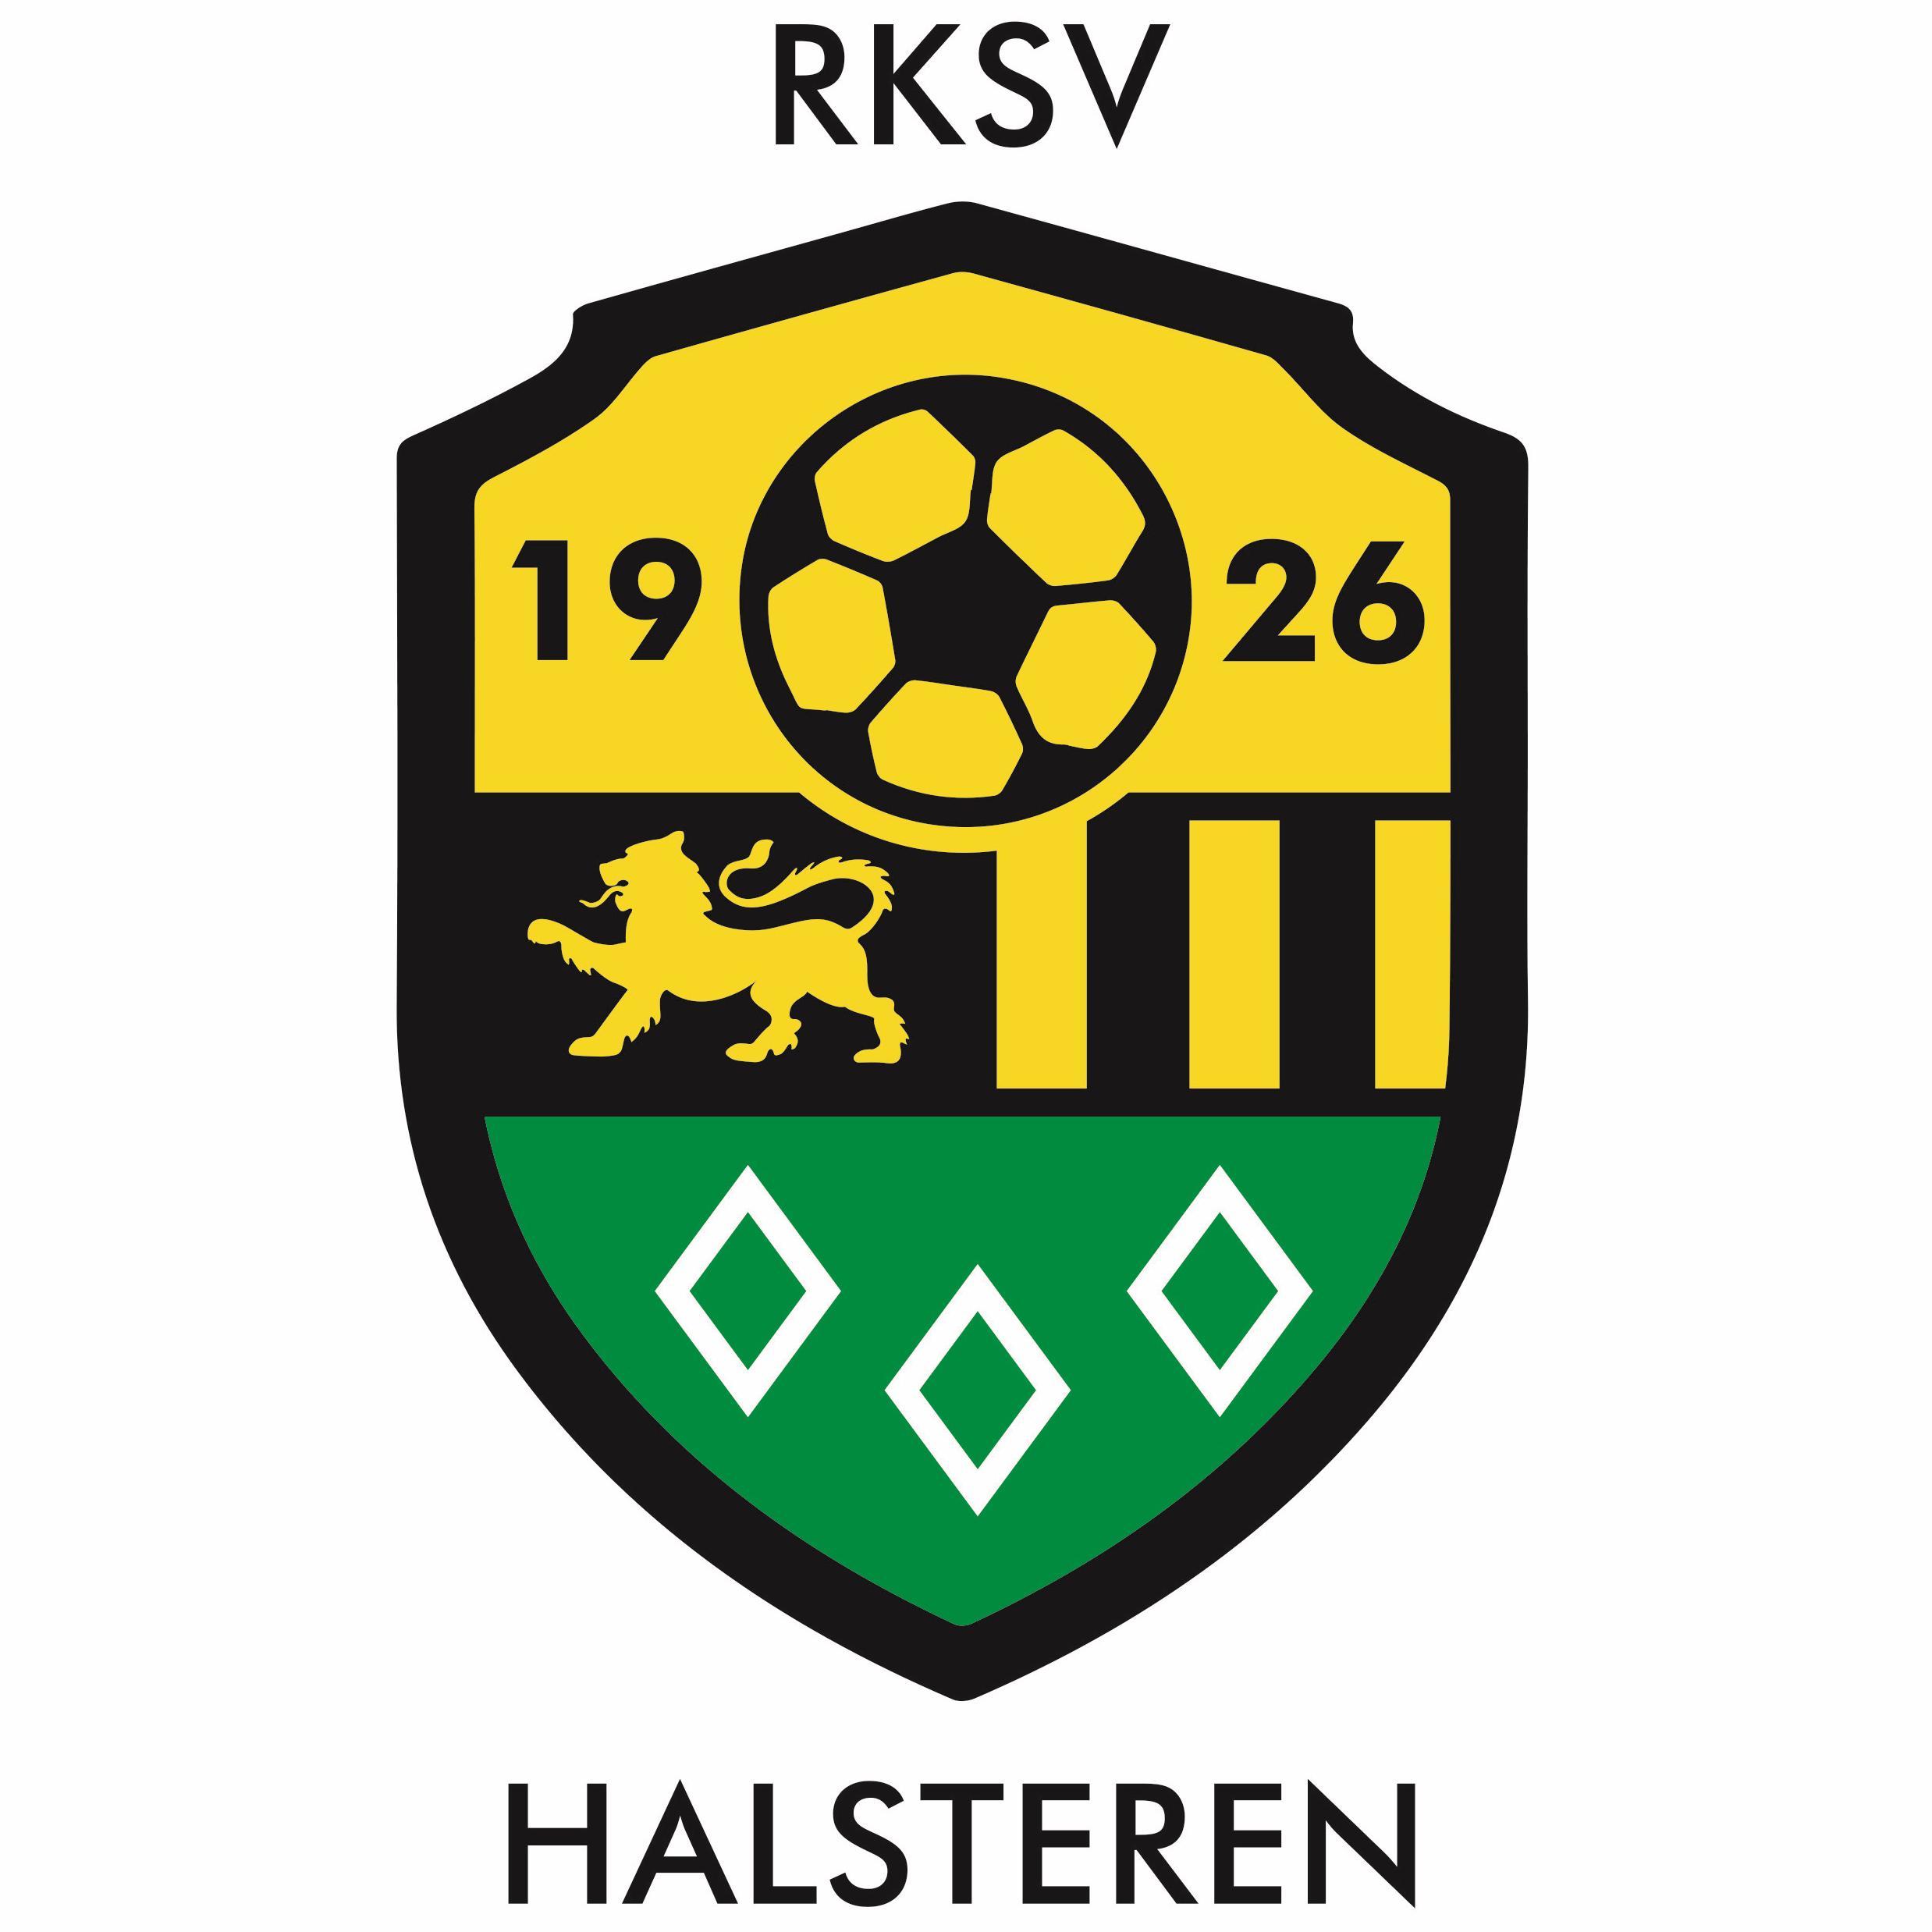 De officiële Twitter feed van RKSV Halsteren, opgericht 1 april 1926. Spelend in de 3e klasse B Zaterdag en 4e divisie B Zondag